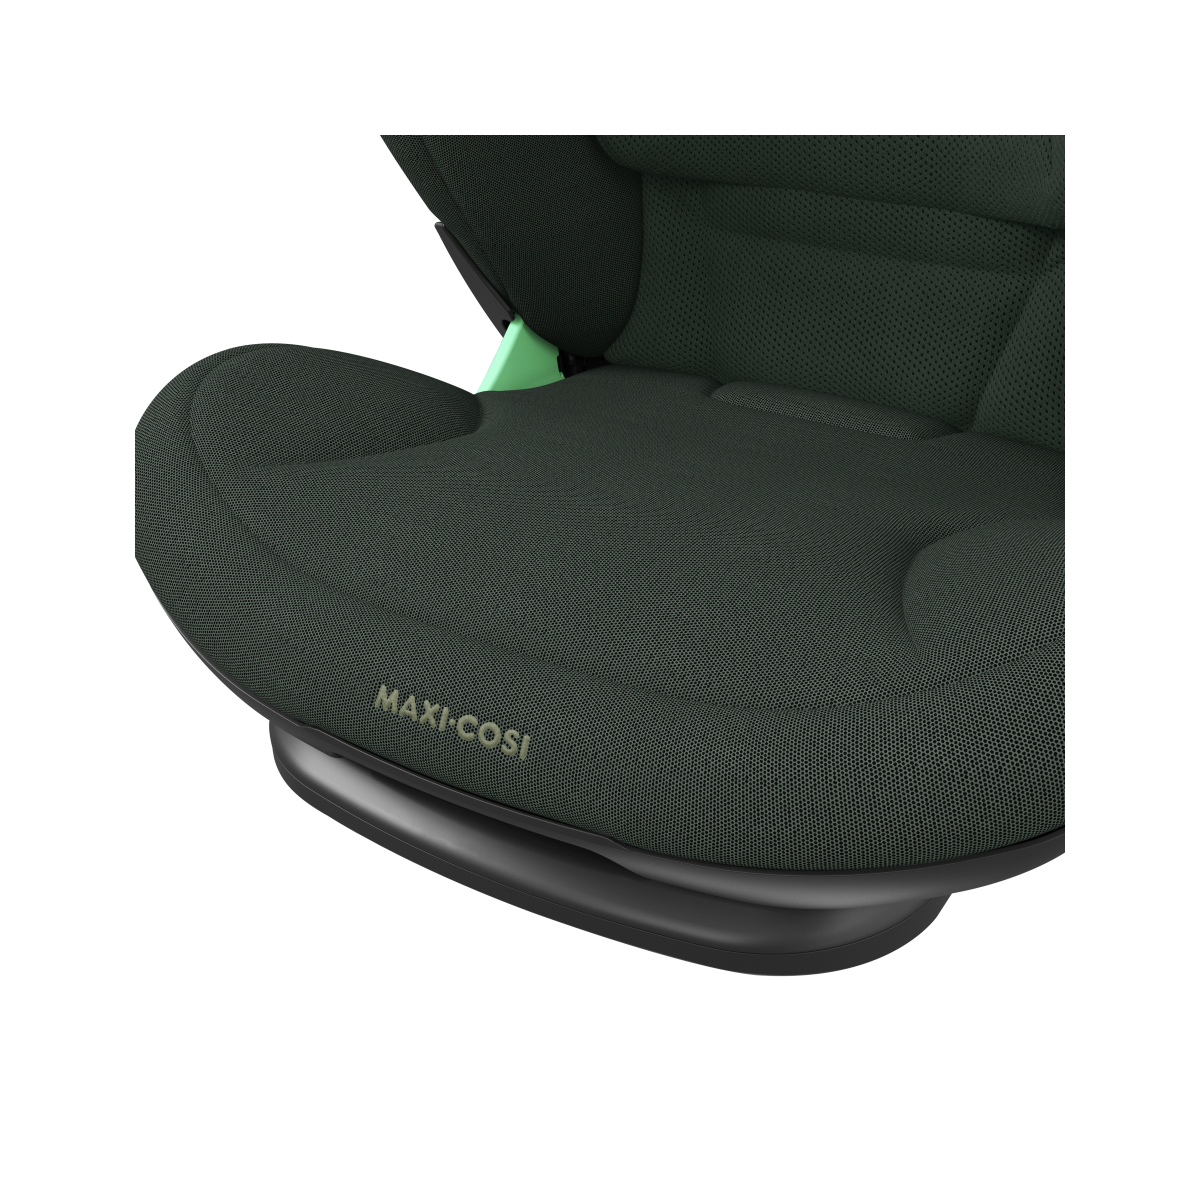 Maxi-Cosi Rodifix Pro2 I-Size Car Seat - Authentic Green